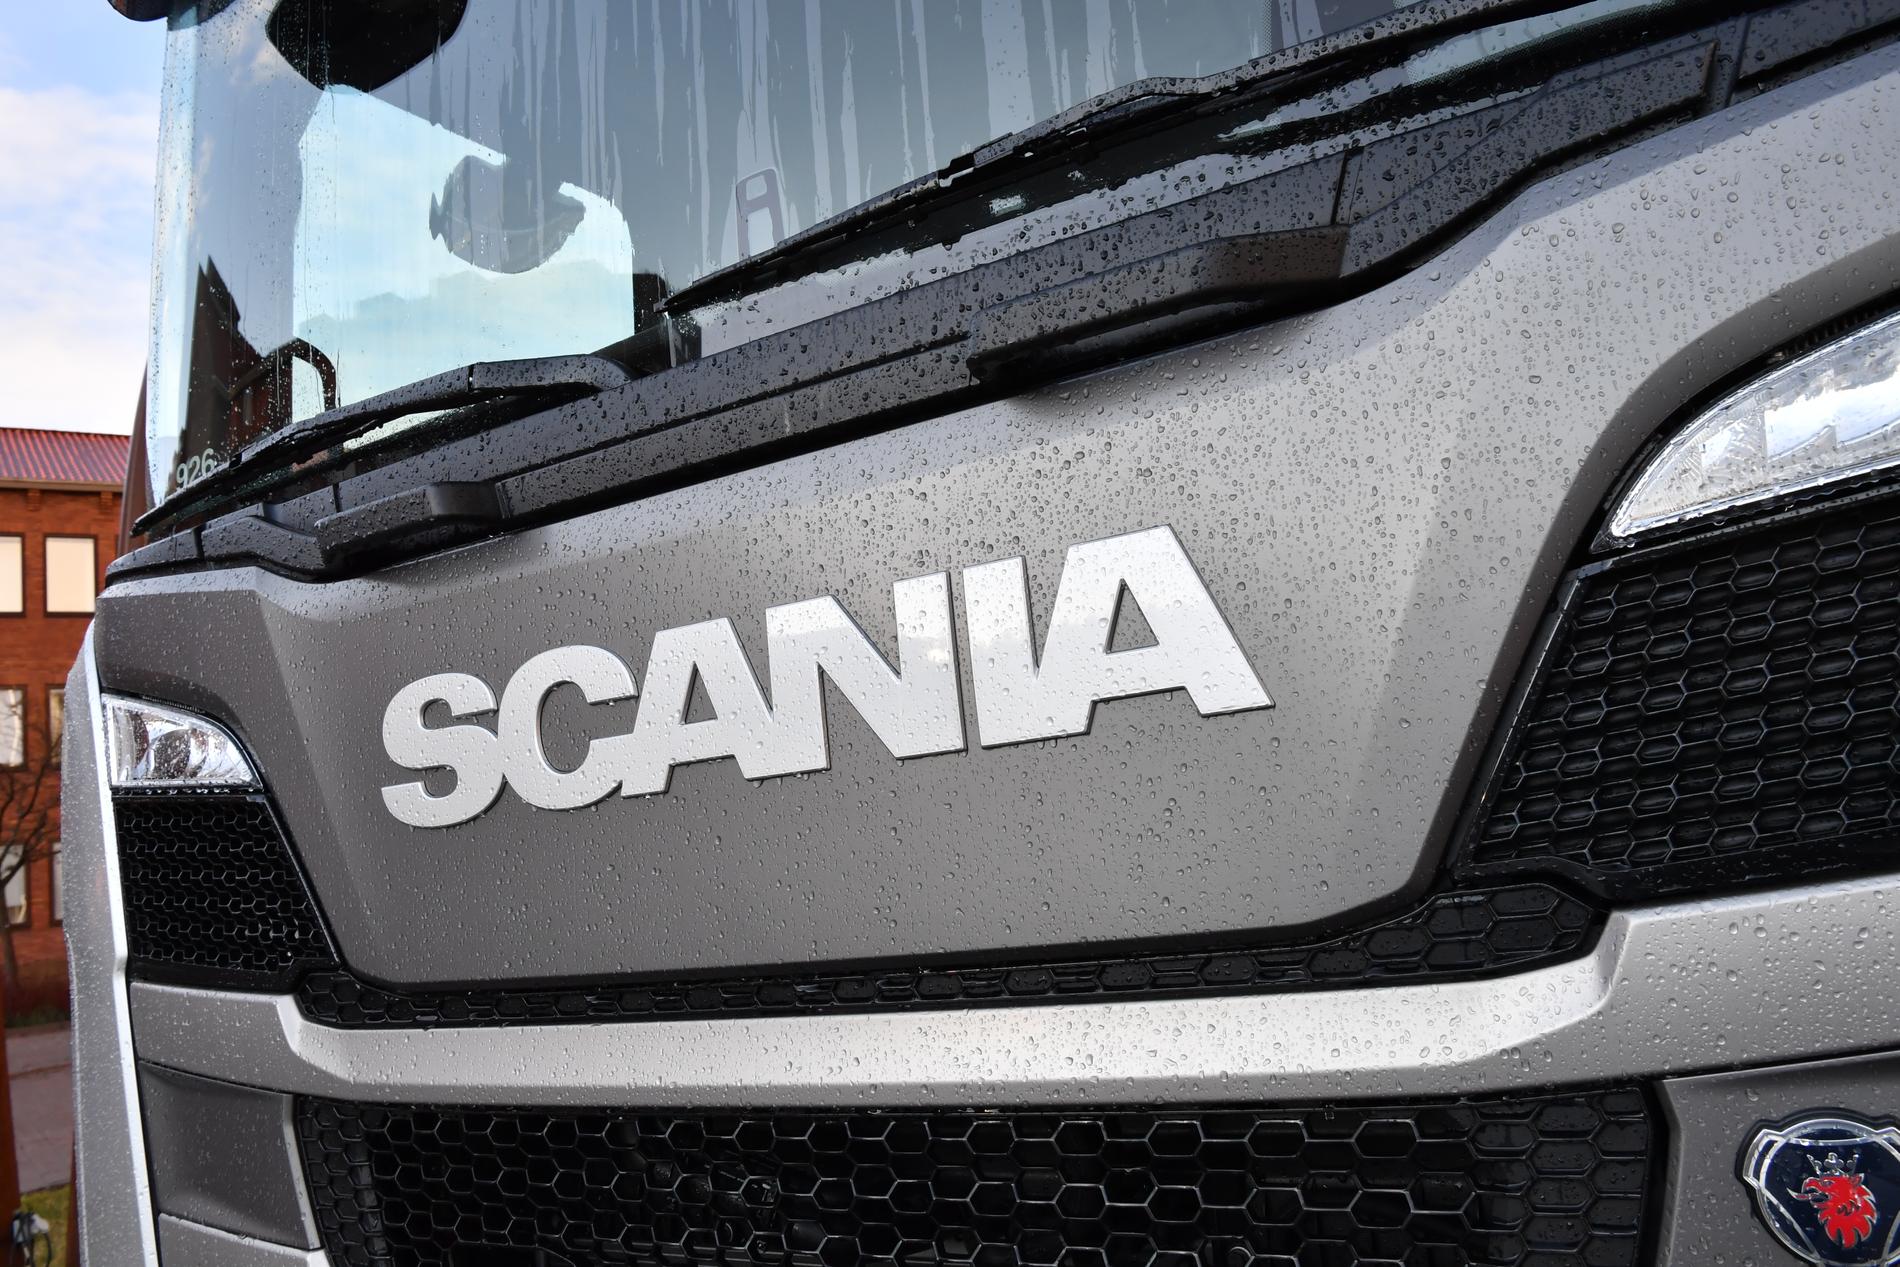 Scania har ännu inte tagit beslut om aktieutdelning. Arkivbild.